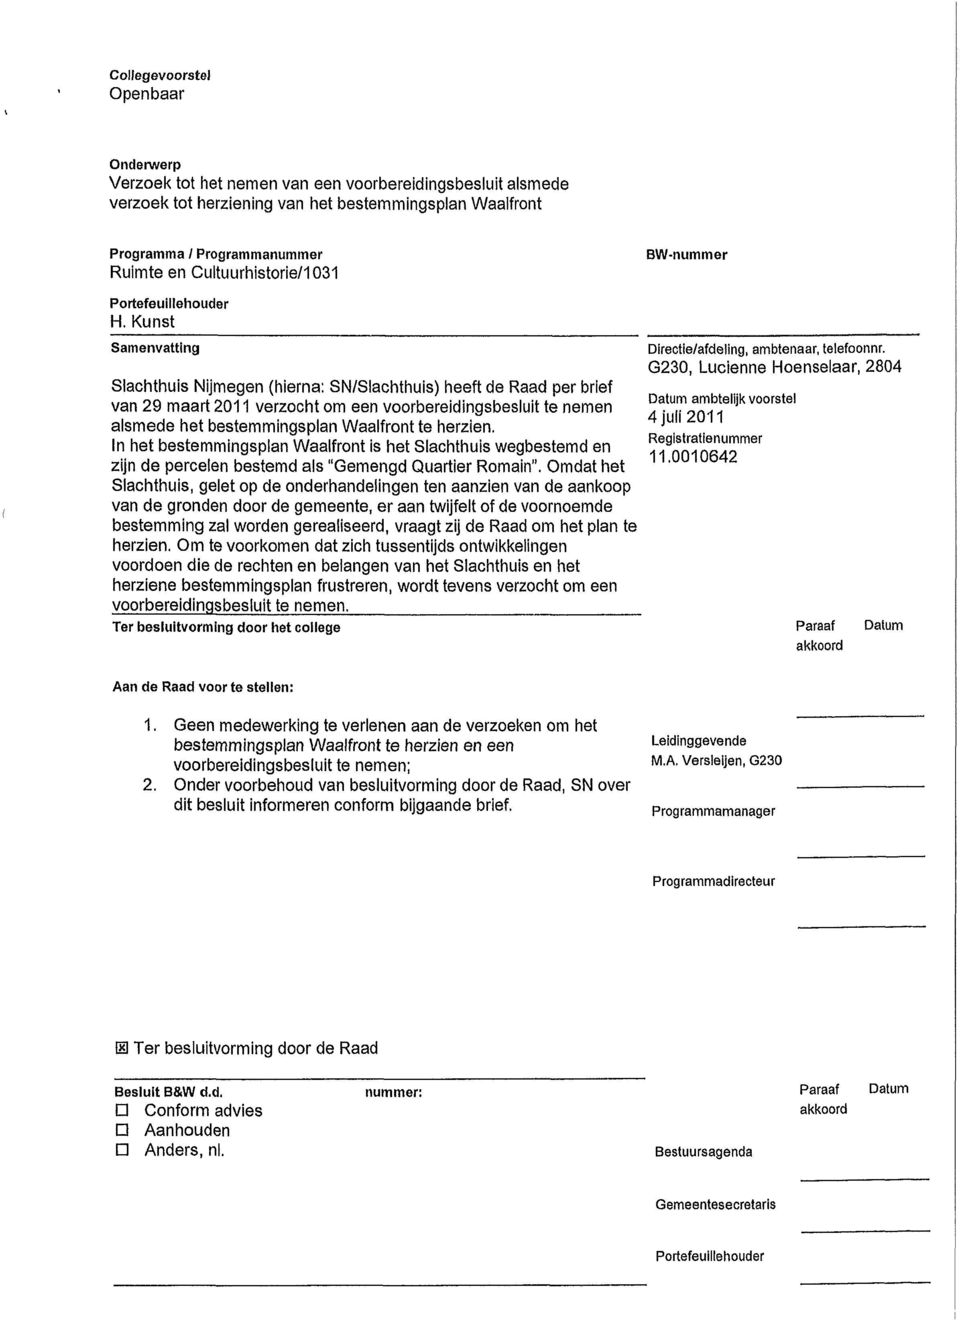 Kunst Samenvatting Slachthuls Nijmegen (hierna; SN/Slachthuls) heeft de Raad per brief van 29 maart 2011 verzocht om een voorbereidingsbesluit te nemen alsmede het bestemmingsplan Waalfront te